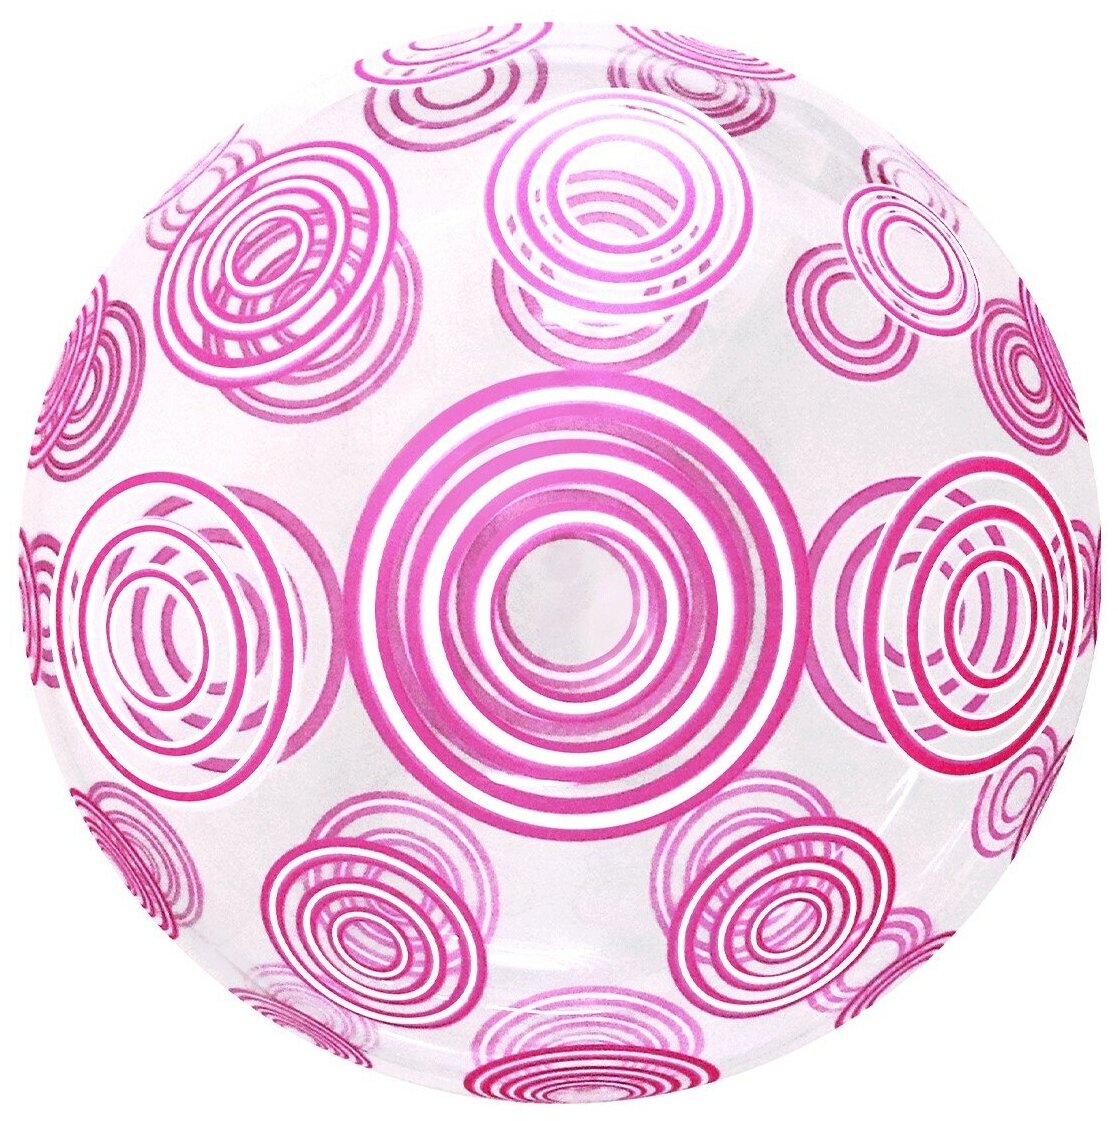 Шар (20'/51 см) Deco Bubble, Розовые круги, Прозрачный, Кристалл, 1 шт. в уп.